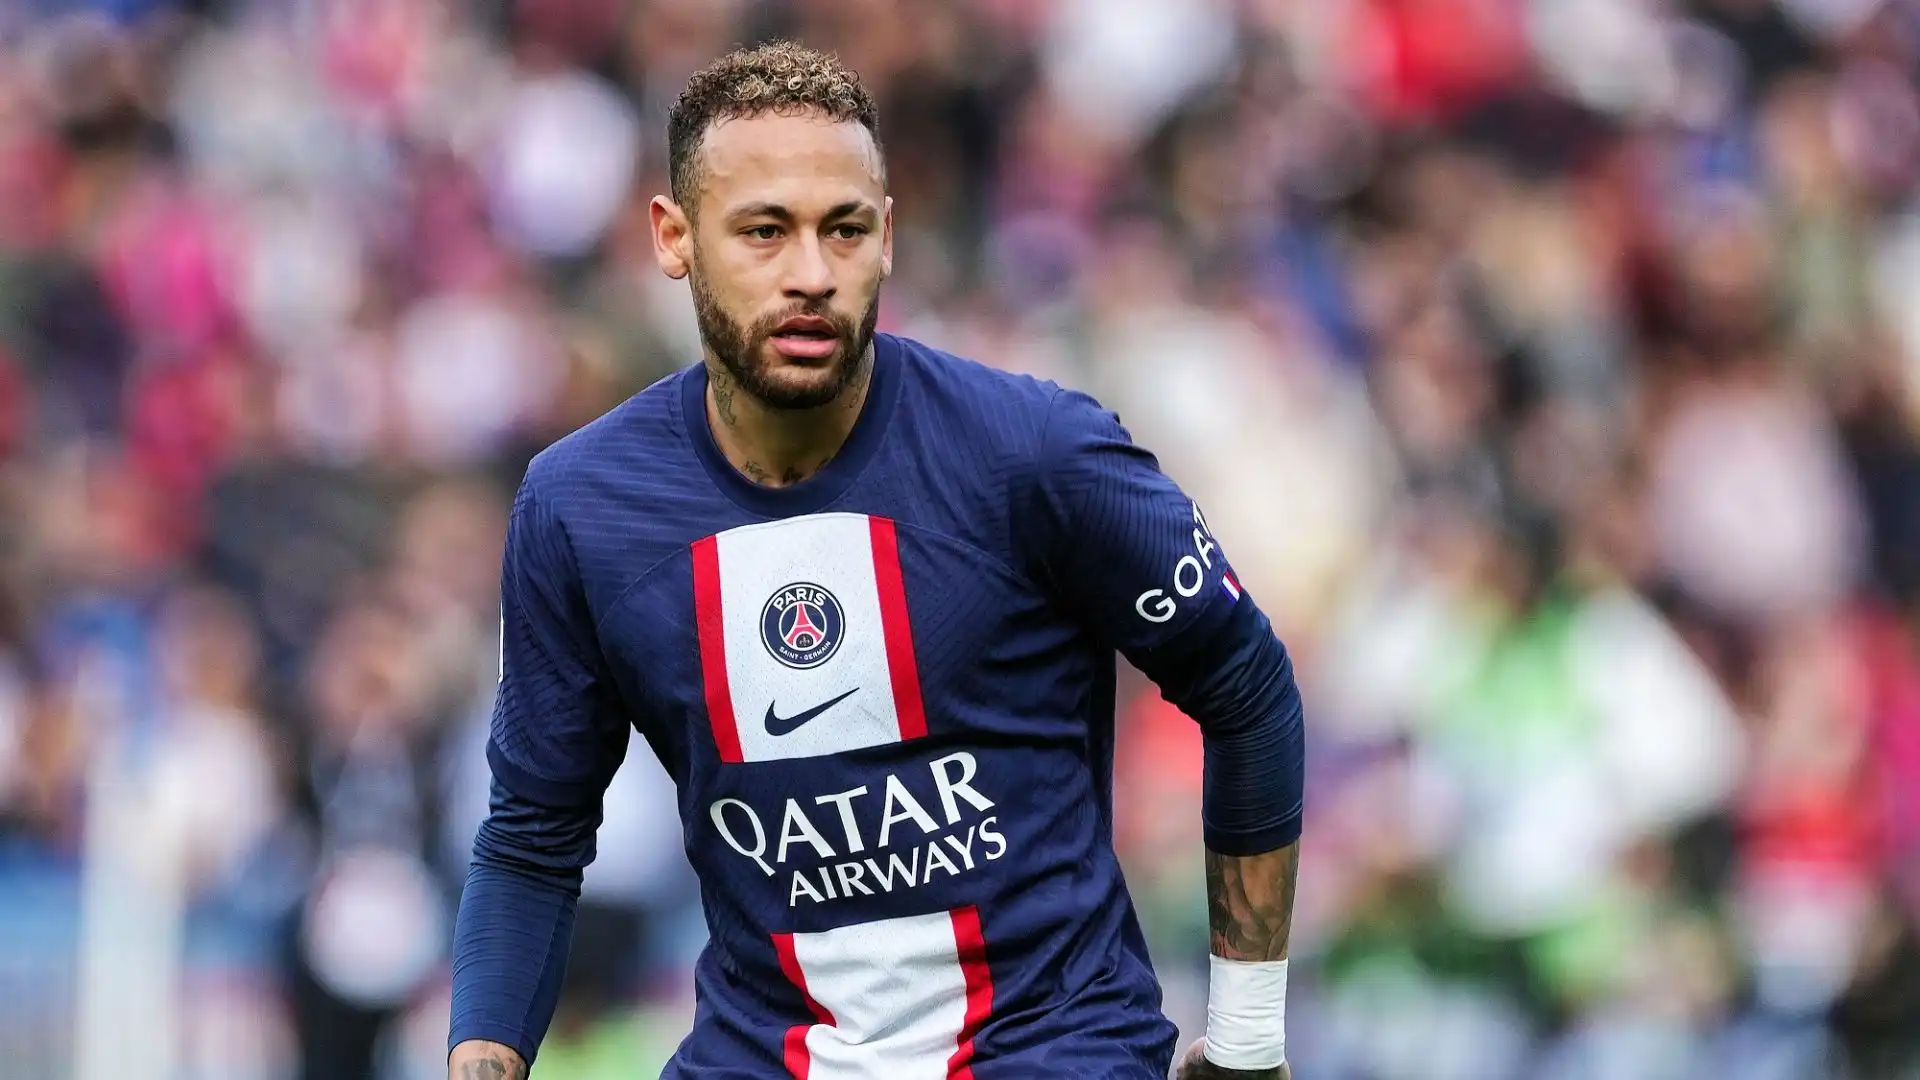 In una recente intervista Neymar ha ammesso di sognare un ritorno al Santos, il suo club d'origine